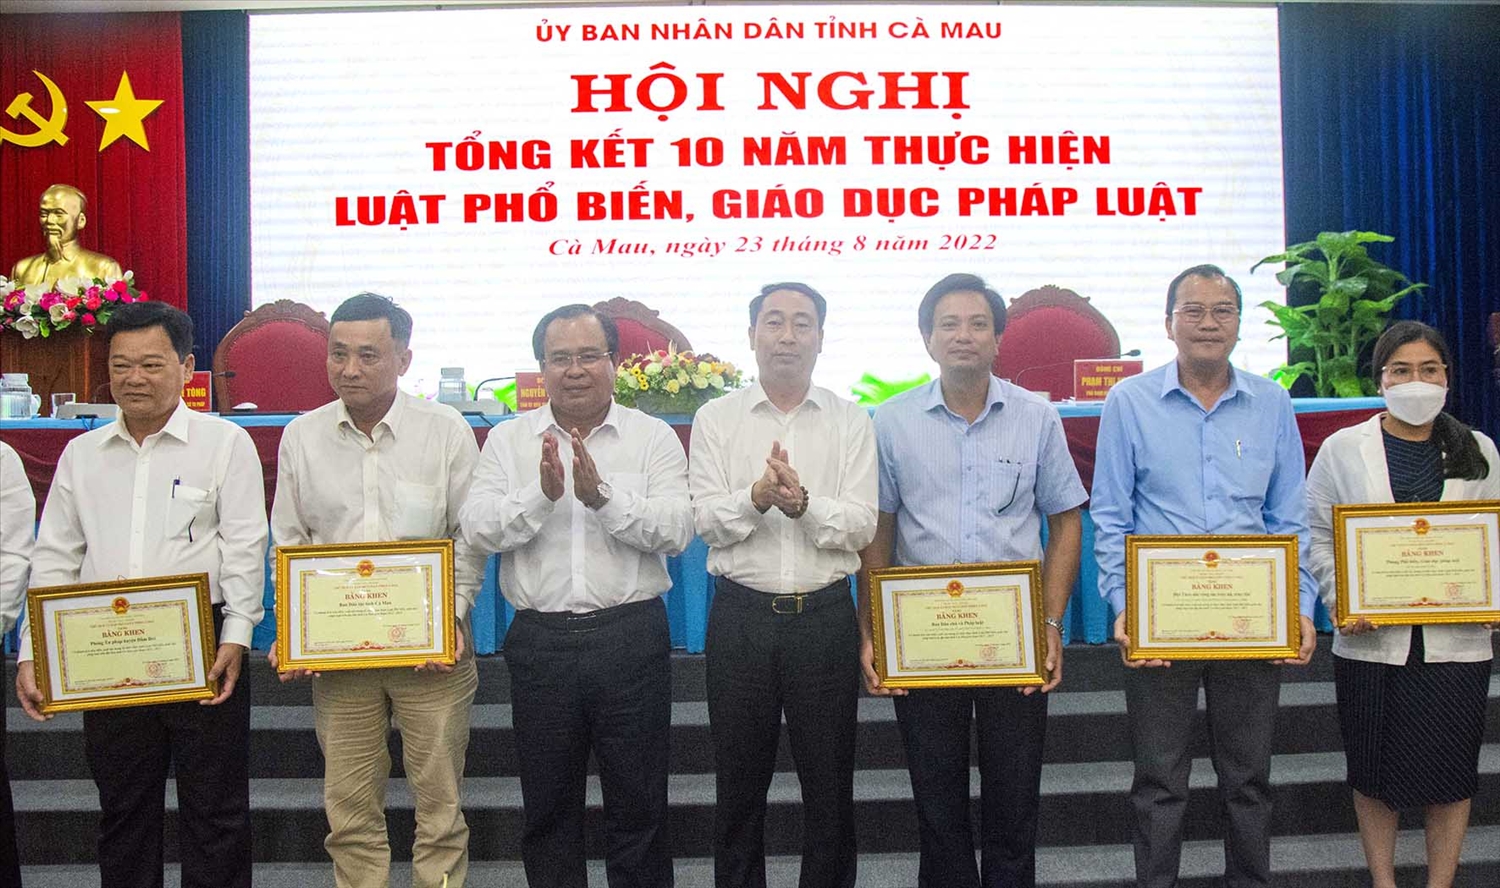 Ông Nguyễn Minh Luân - Phó Chủ tịch UBND tỉnh đã trao Bằng khen đến cho 12 tập thể. Trong đó, có Ban Dân tộc tỉnh Cà Mau